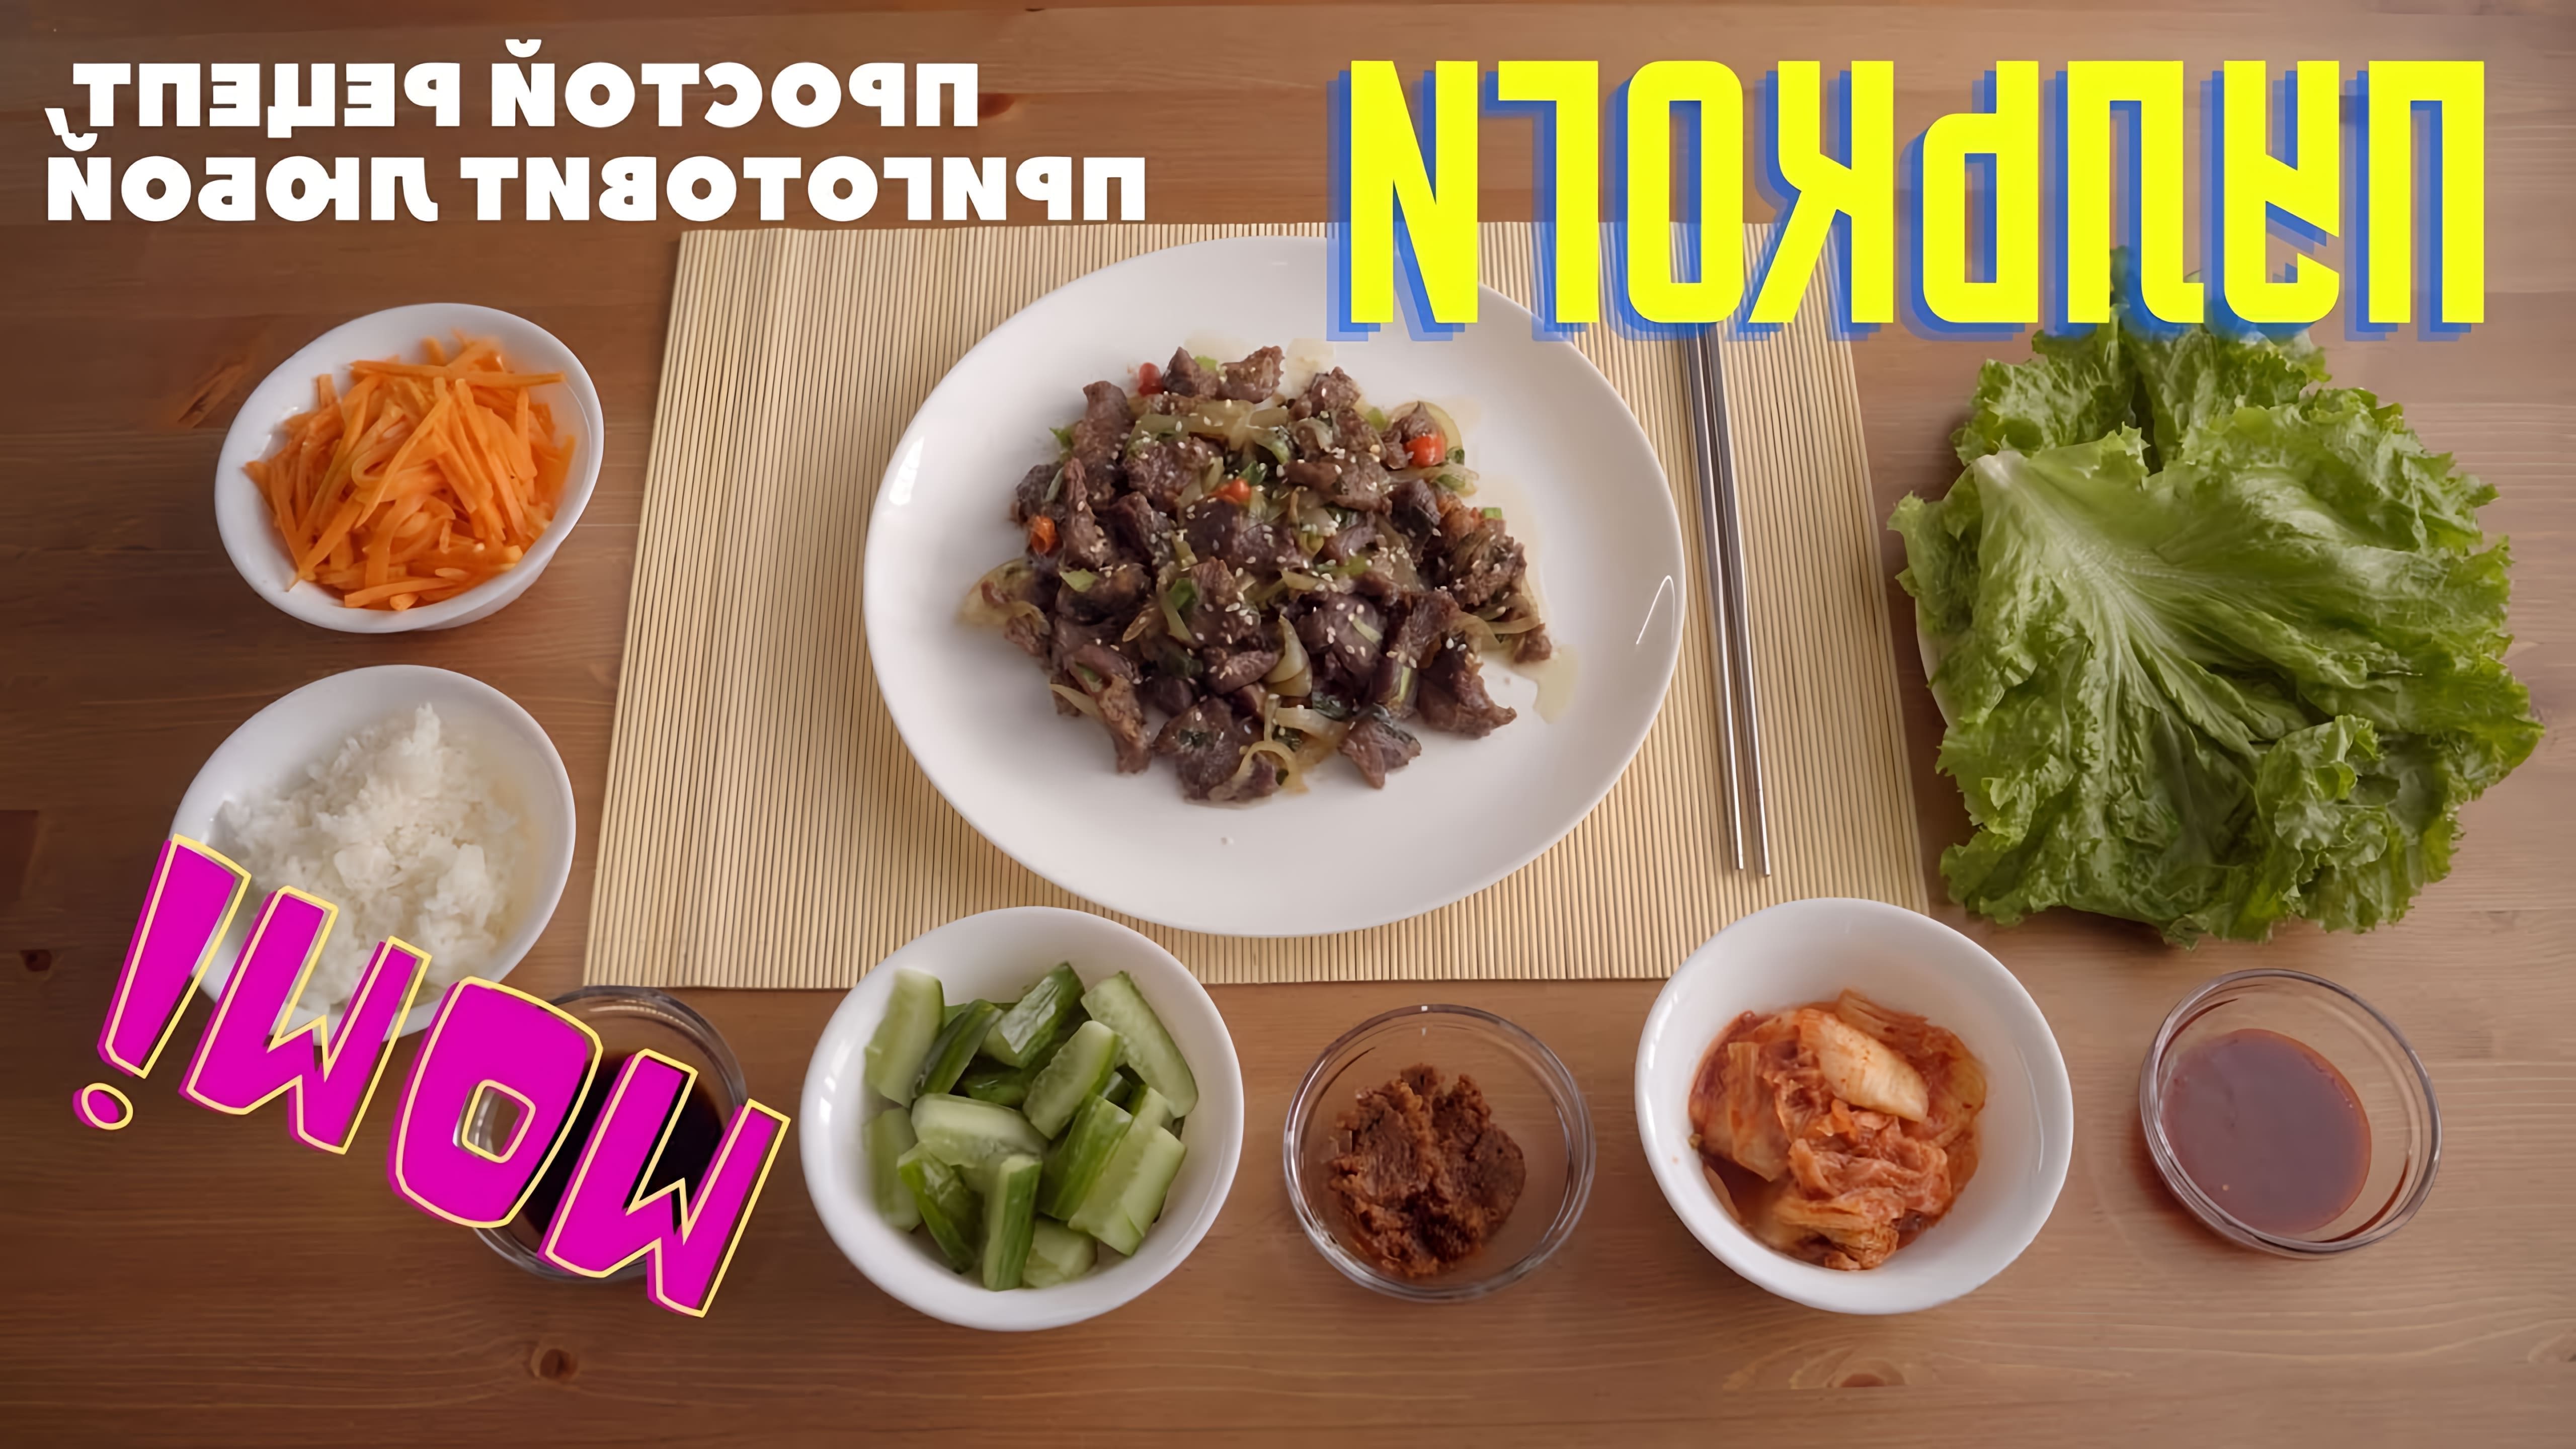 Сегодня готовим популярное корейское блюдо - Пулькоги 불고기! Простой и пошаговый рецепт с пояснениями, приготовить... 